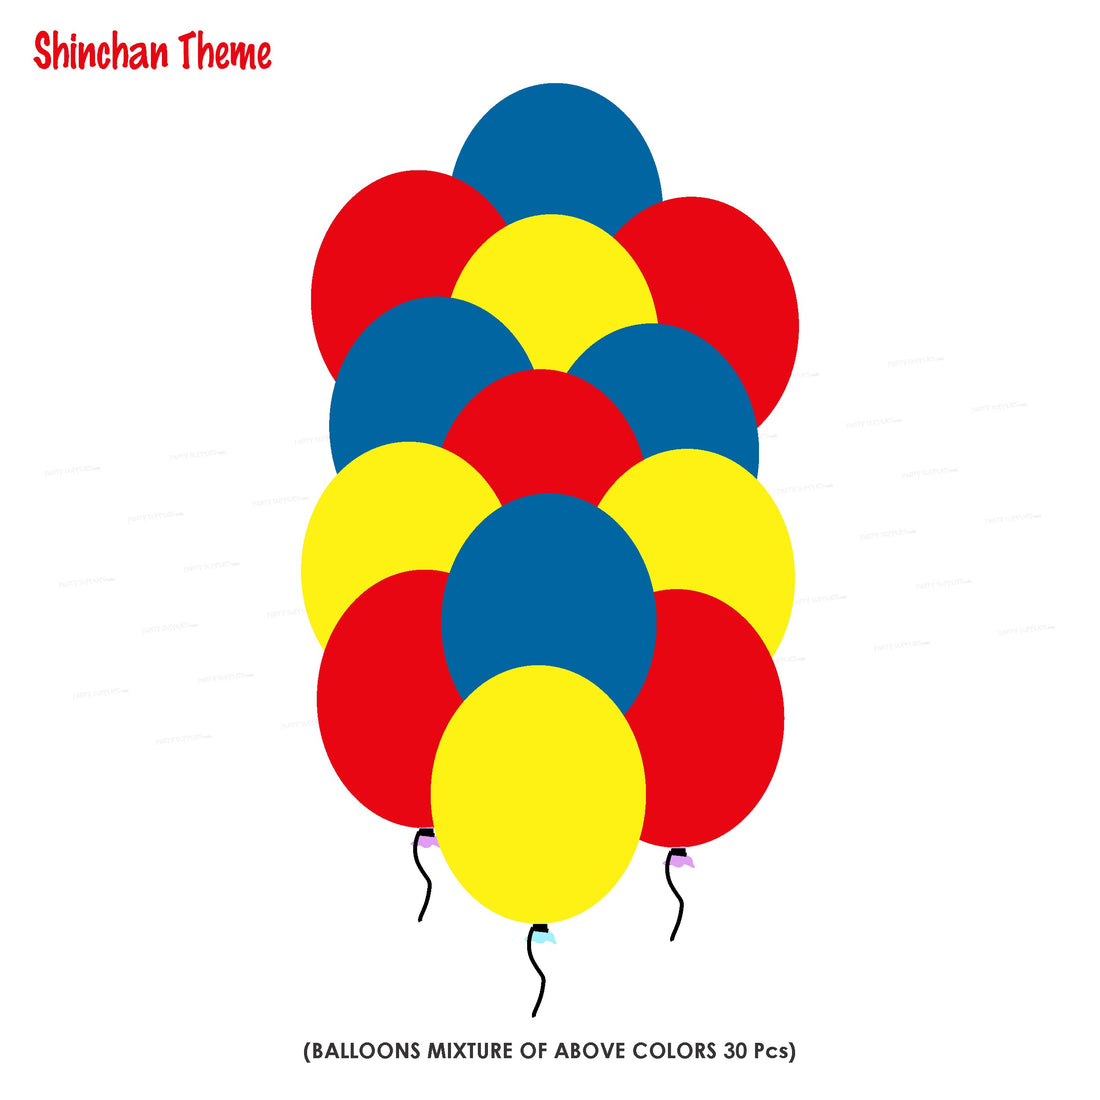 PSI Shinchan Theme Colour 30 Pcs. Balloons